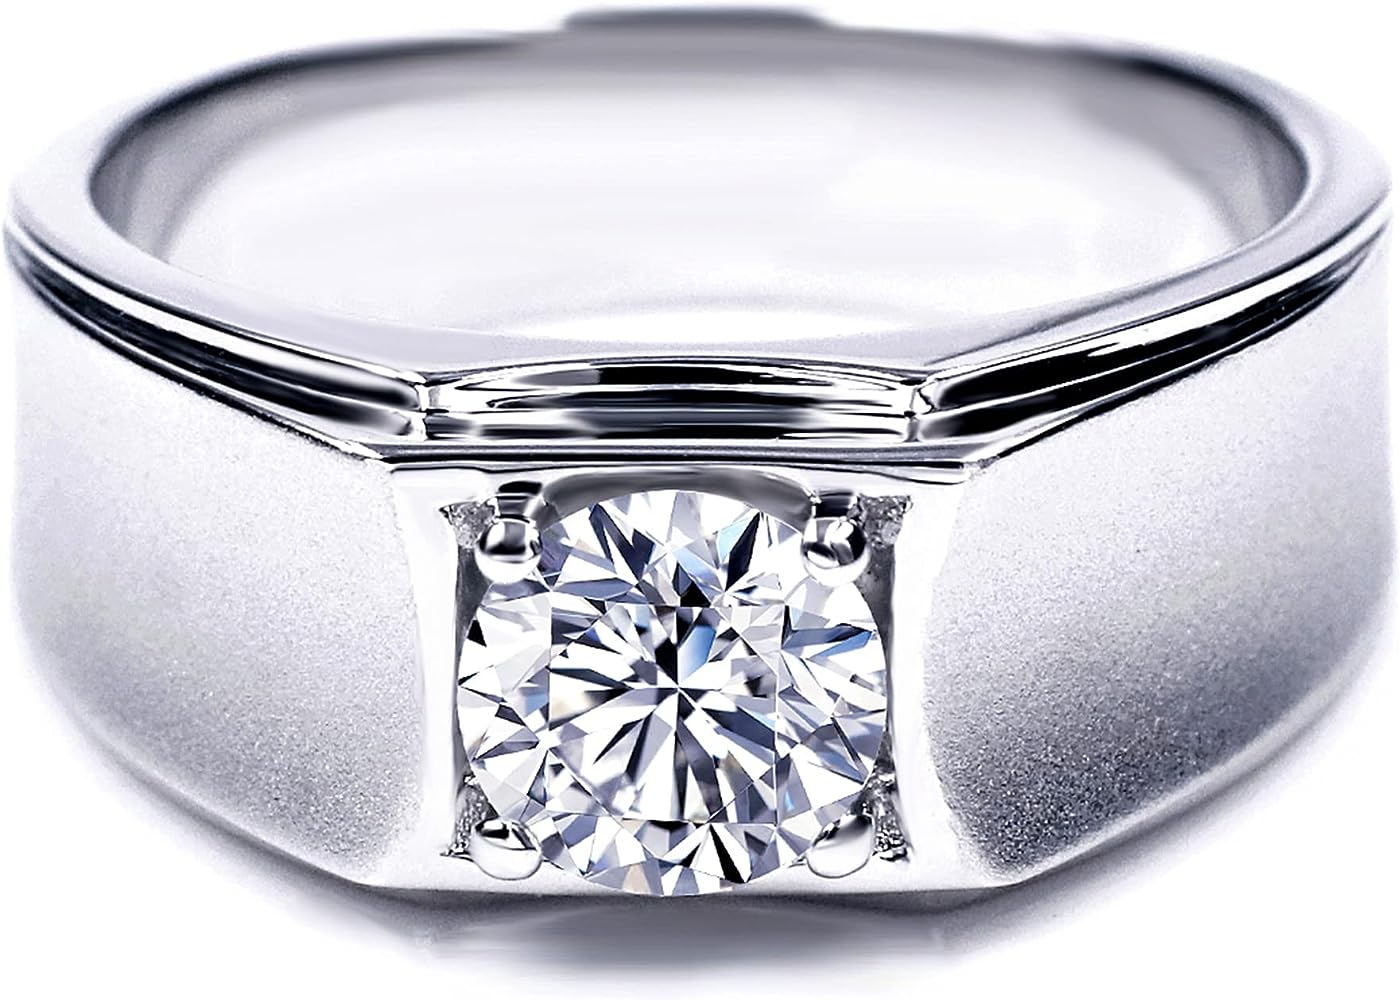 Los anillos perfectos para tu propuesta de matrimonio: ¡Sorprende a tu pareja con estilo!